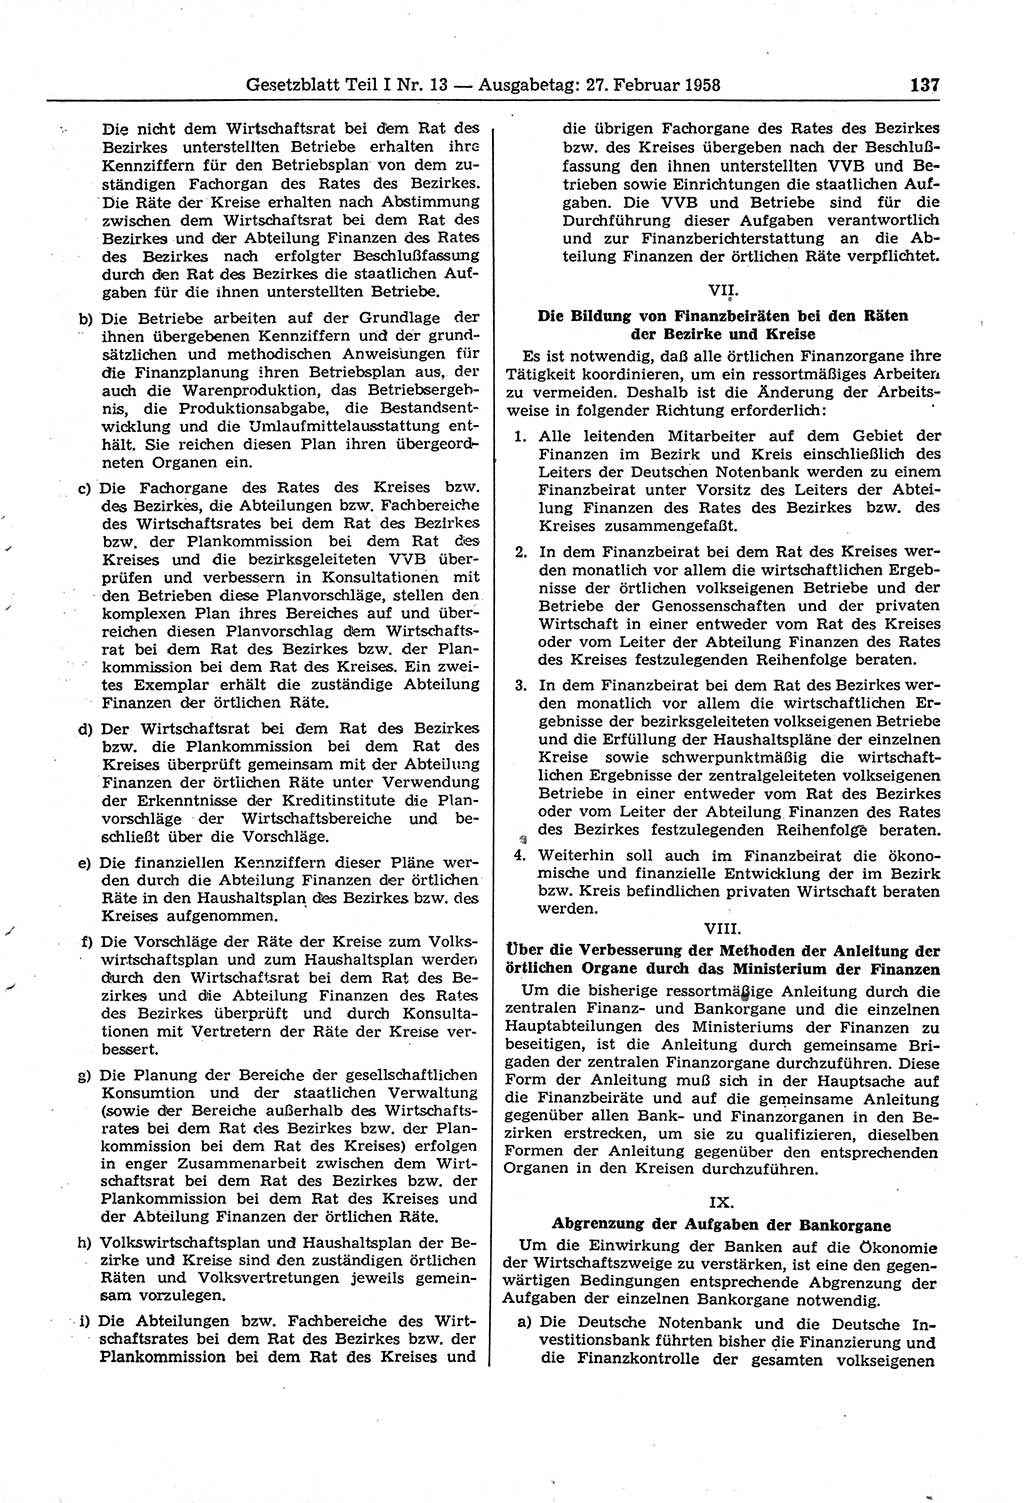 Gesetzblatt (GBl.) der Deutschen Demokratischen Republik (DDR) Teil Ⅰ 1958, Seite 137 (GBl. DDR Ⅰ 1958, S. 137)